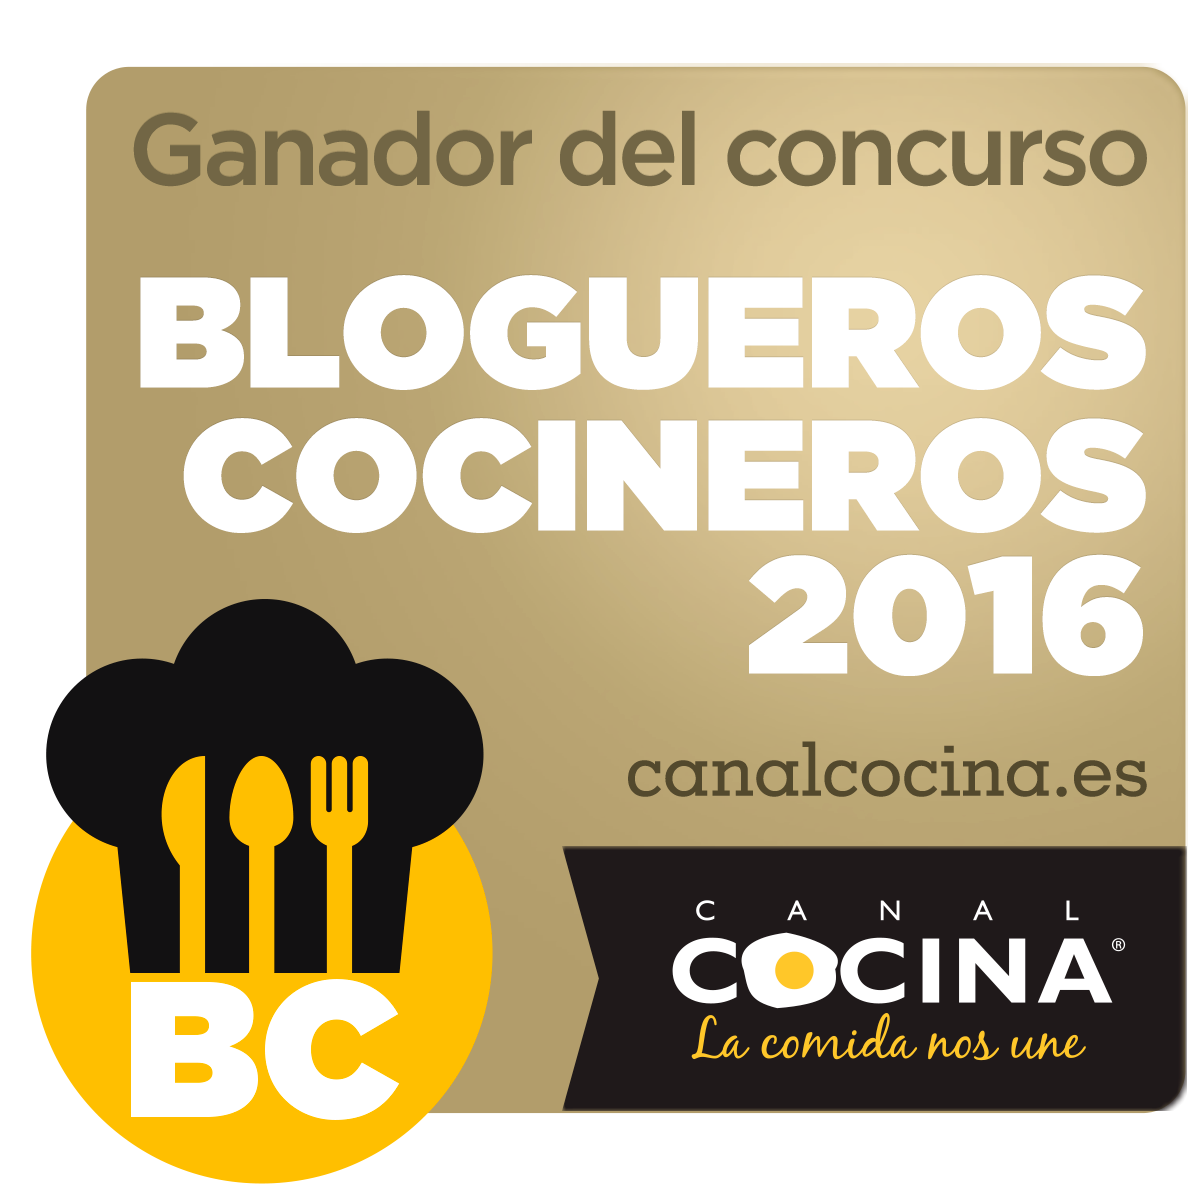 Ganadora en el concurso de Canal Cocina “Blogueros Cocineros 2016”